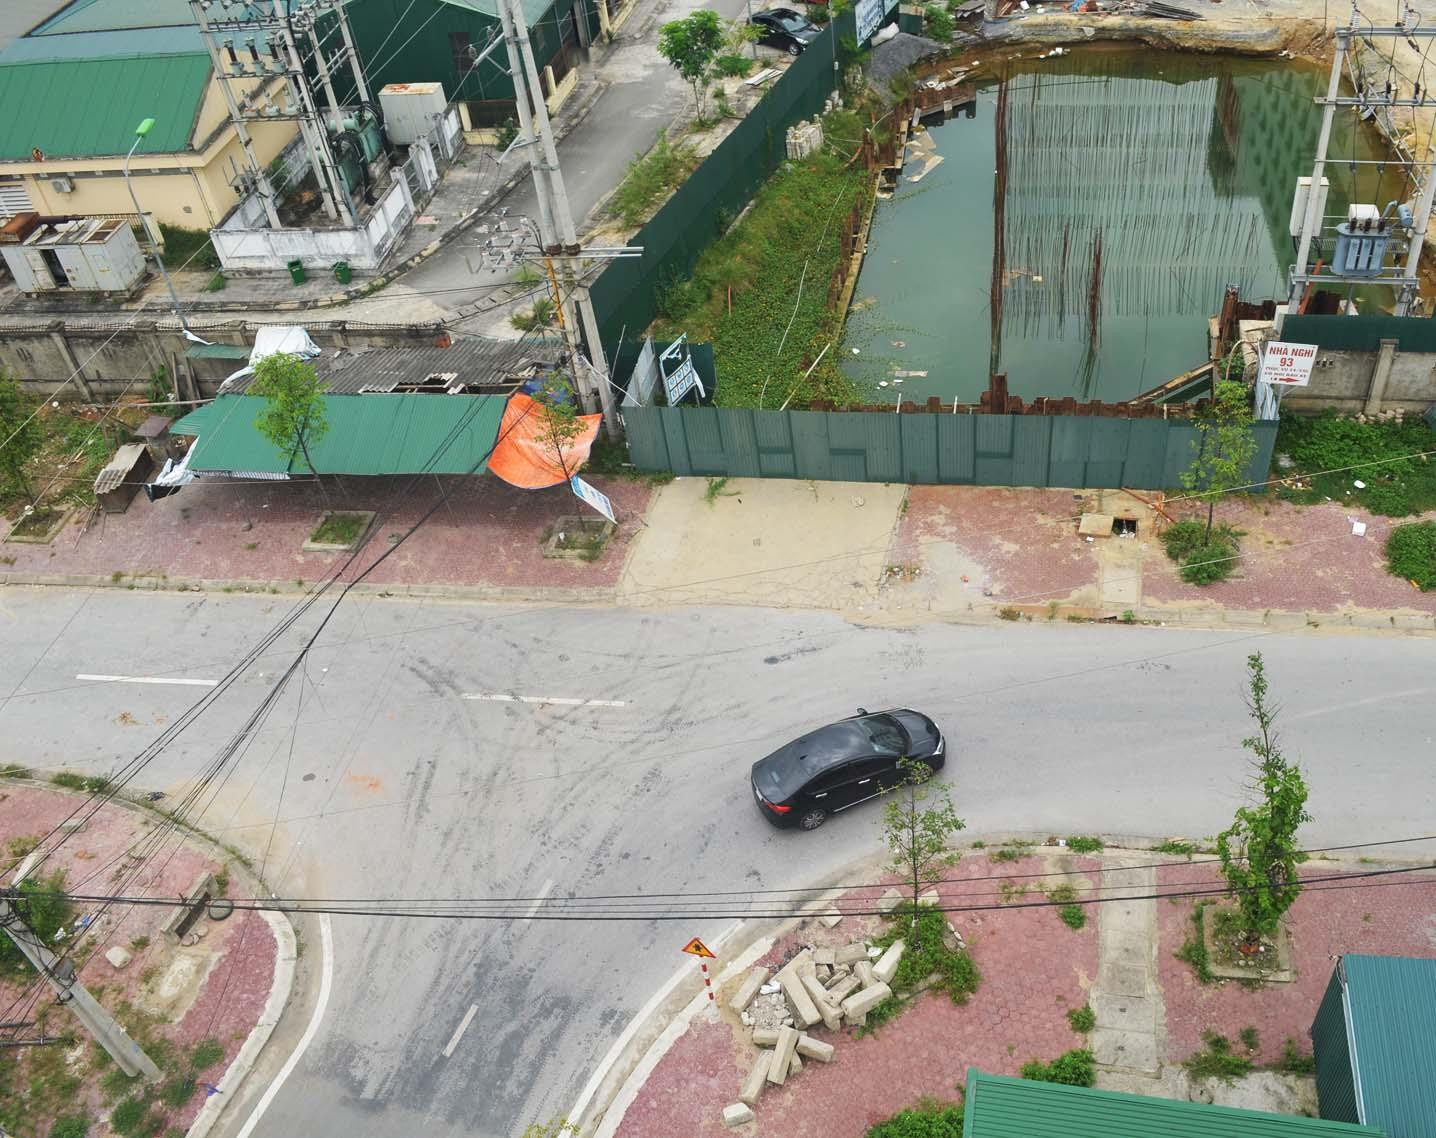 Đường Hồ Tông Thốc hiện vẫn đang bị bít lại bởi việc thi công dự án Bệnh viện HNĐK Nghệ An giai đoạn 2 (ảnh chụp sáng ngày 8/5/2019). Ảnh: Nhật Lân